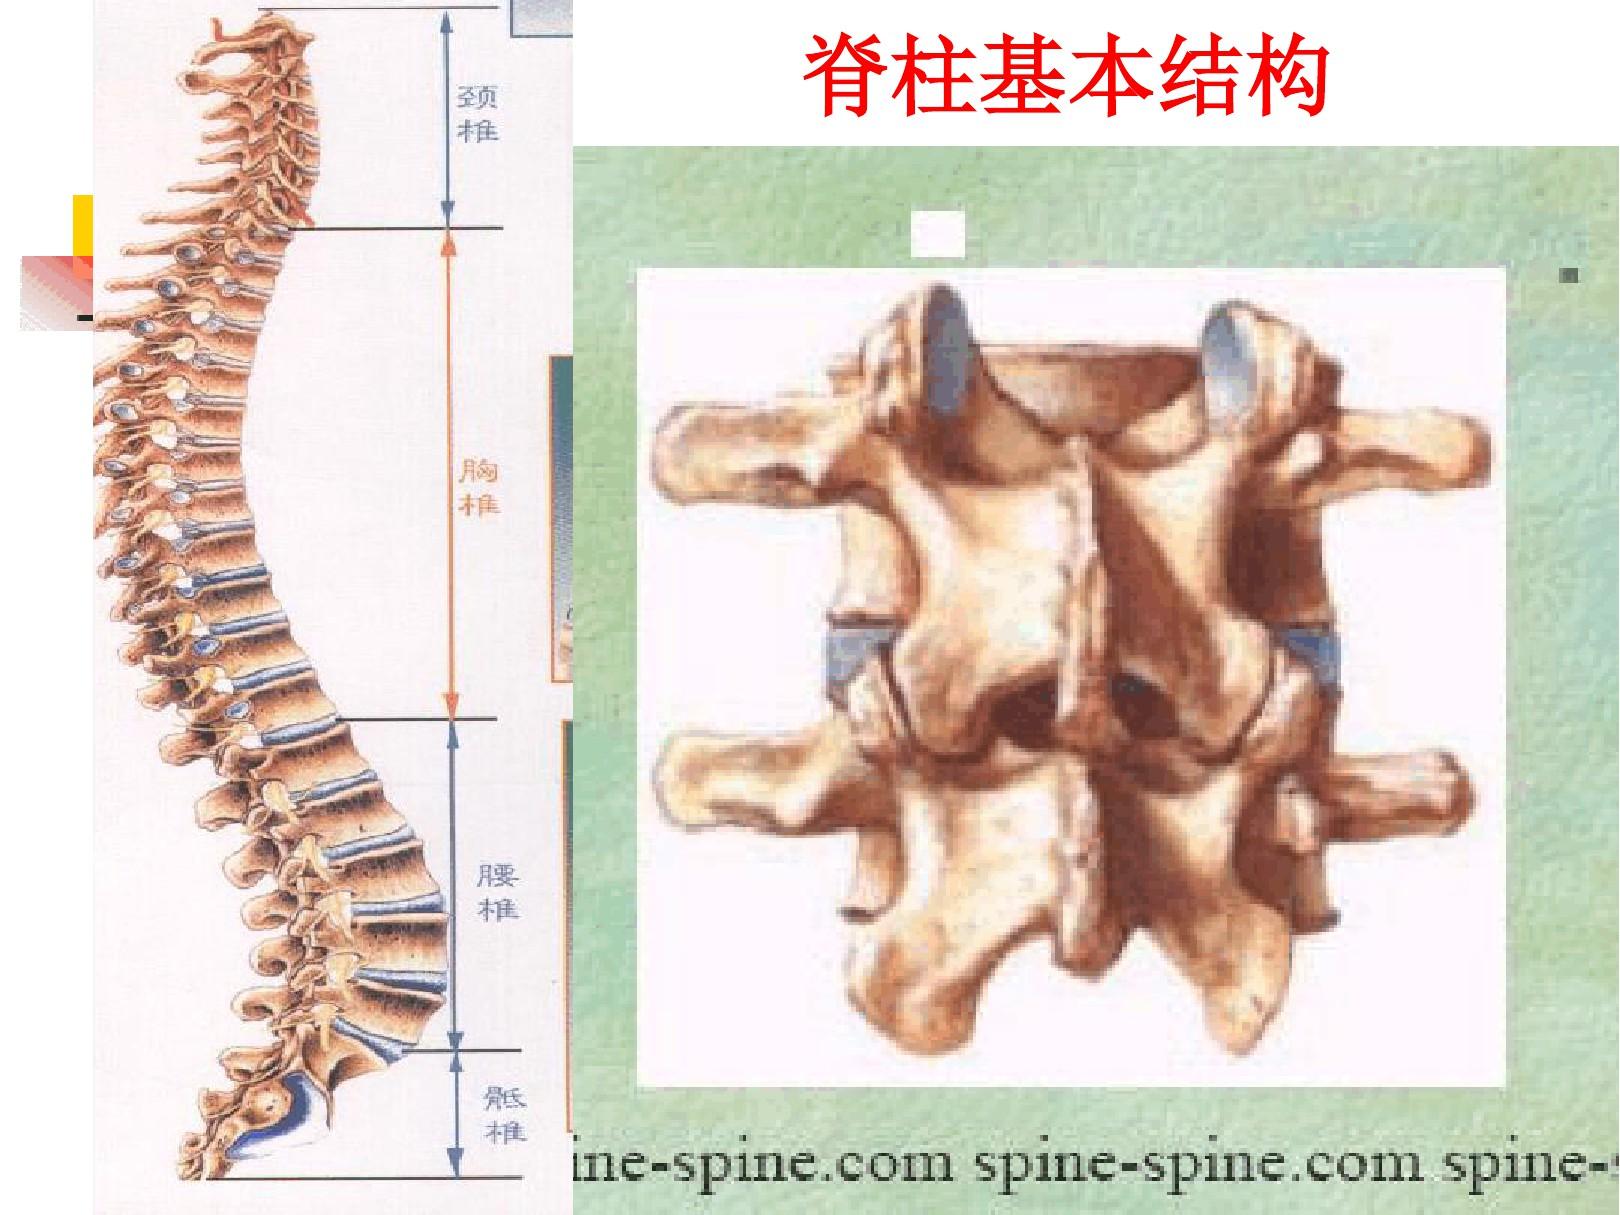 脊柱骨折和脊髓损伤病人的护理